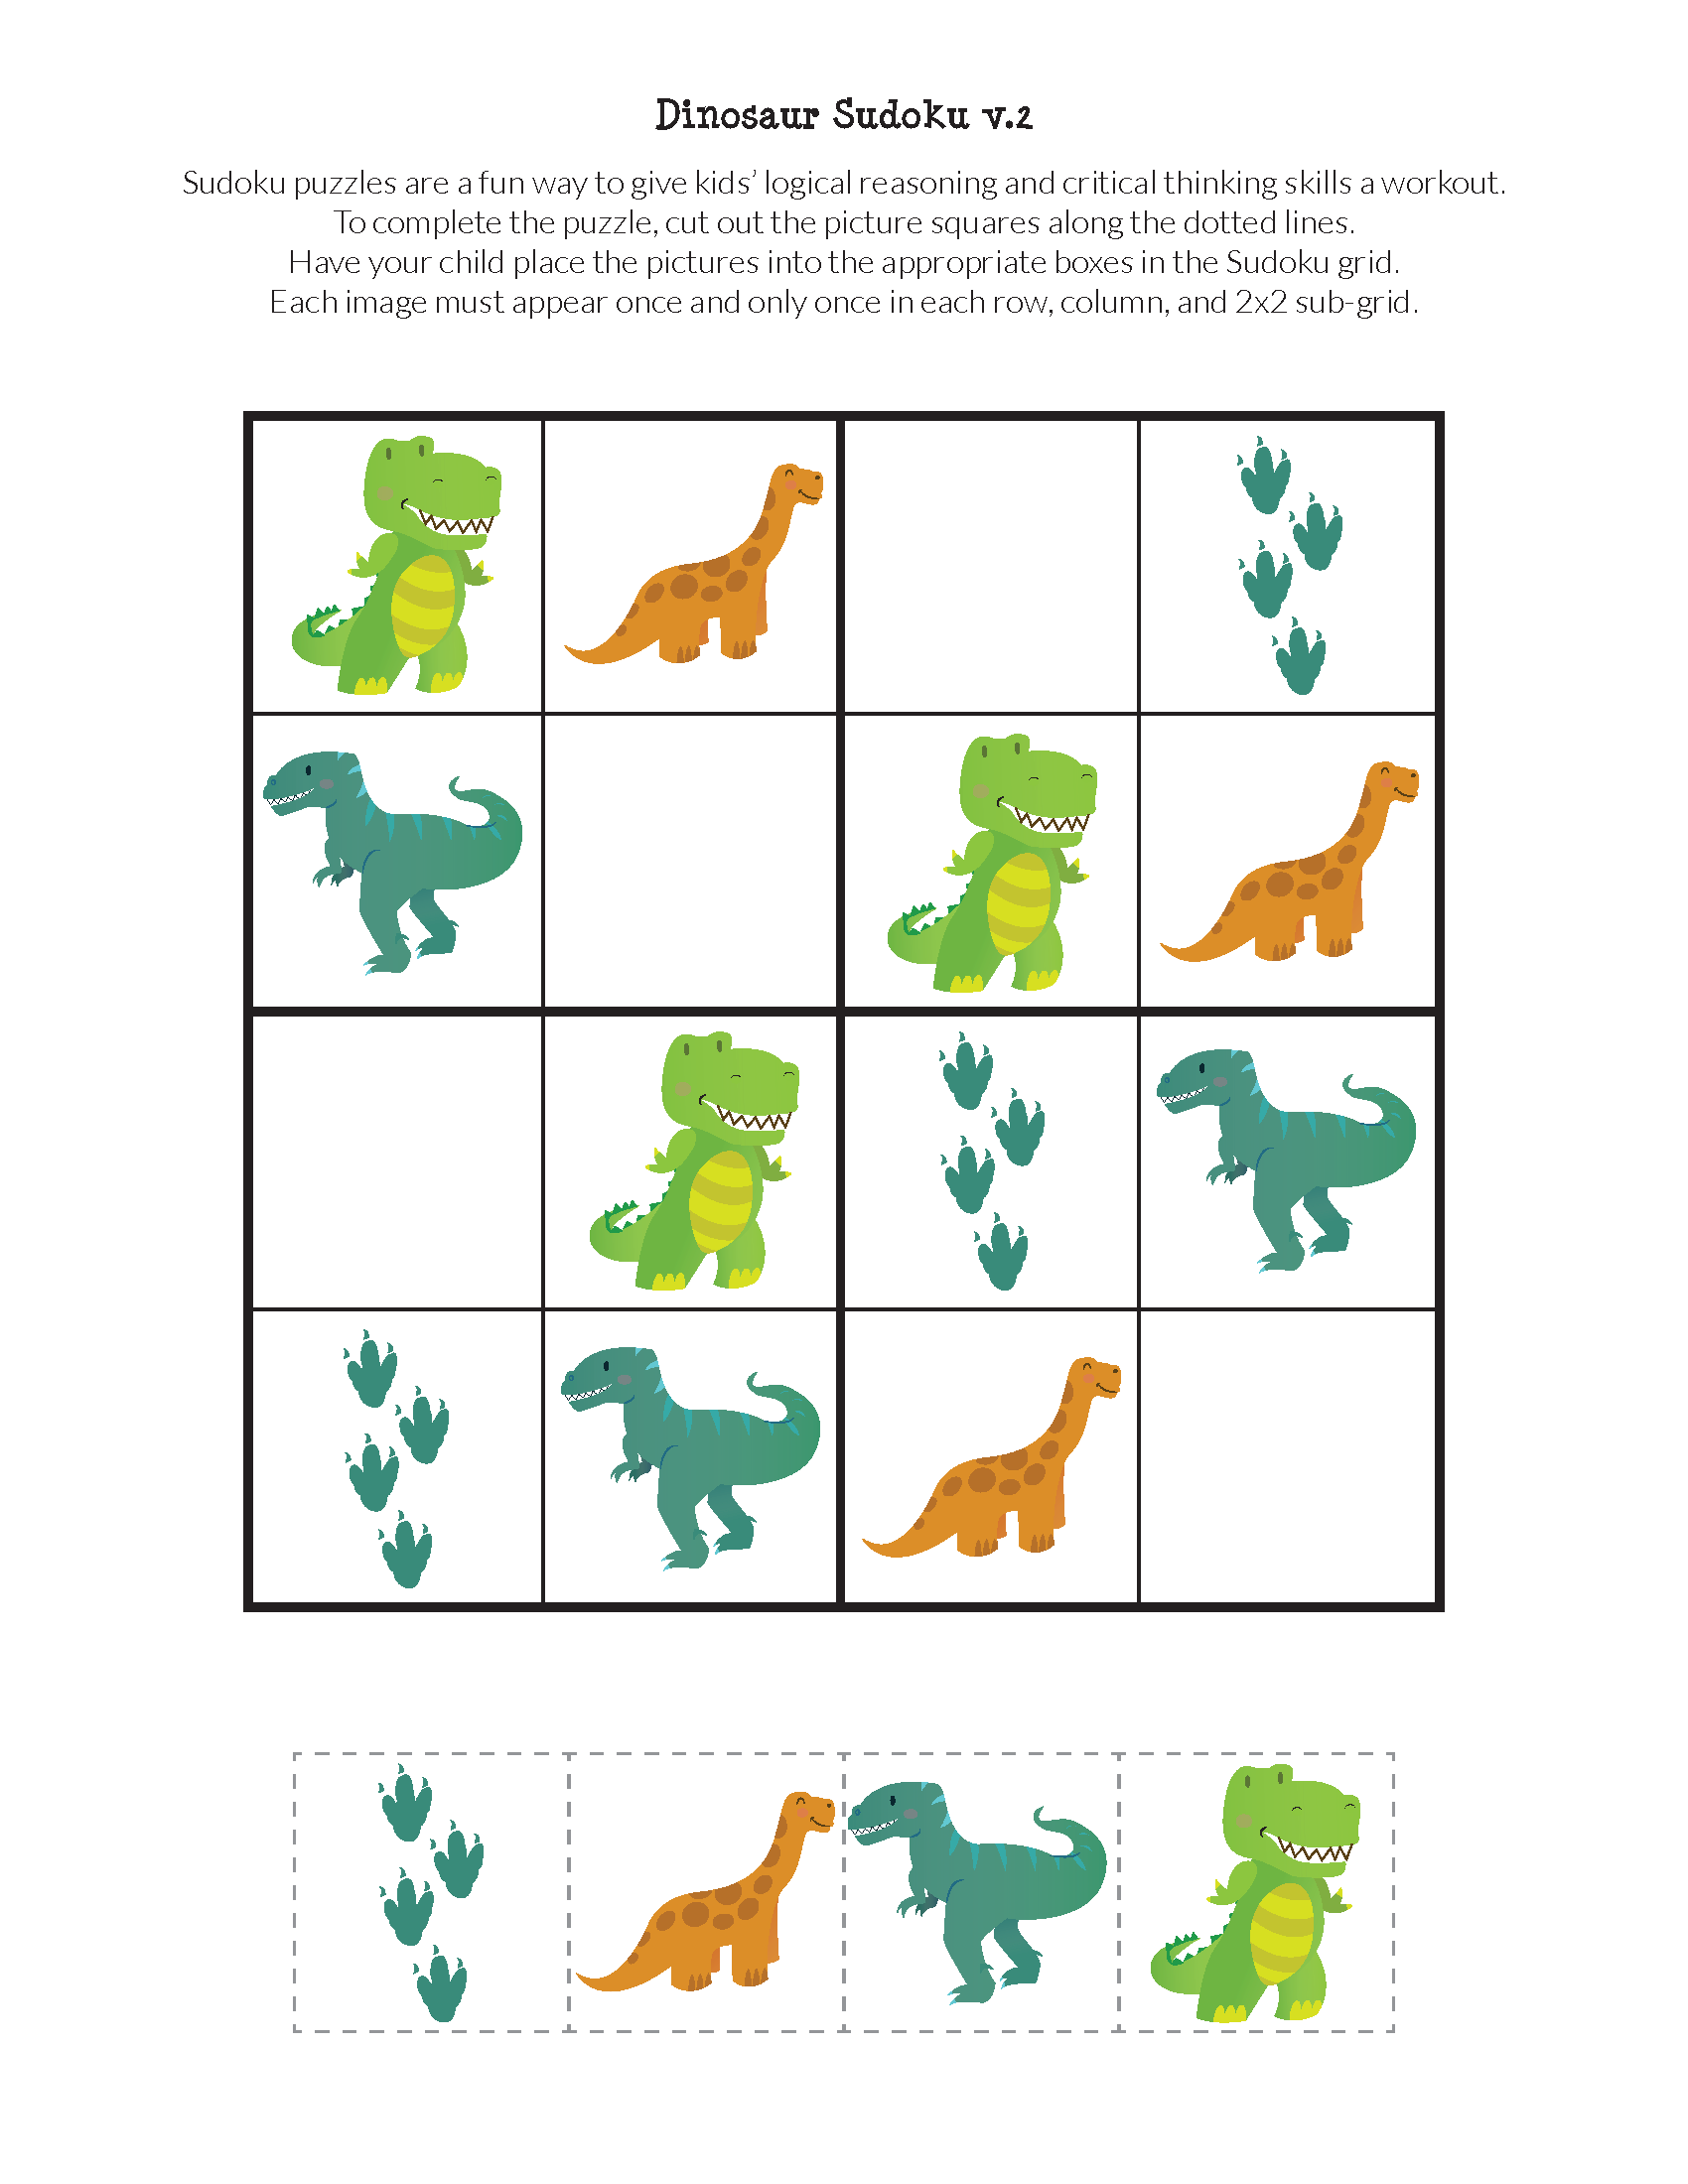 Http Www.giftofcuriosity.com Dinosaur-sudoku-puzzles-free-printables